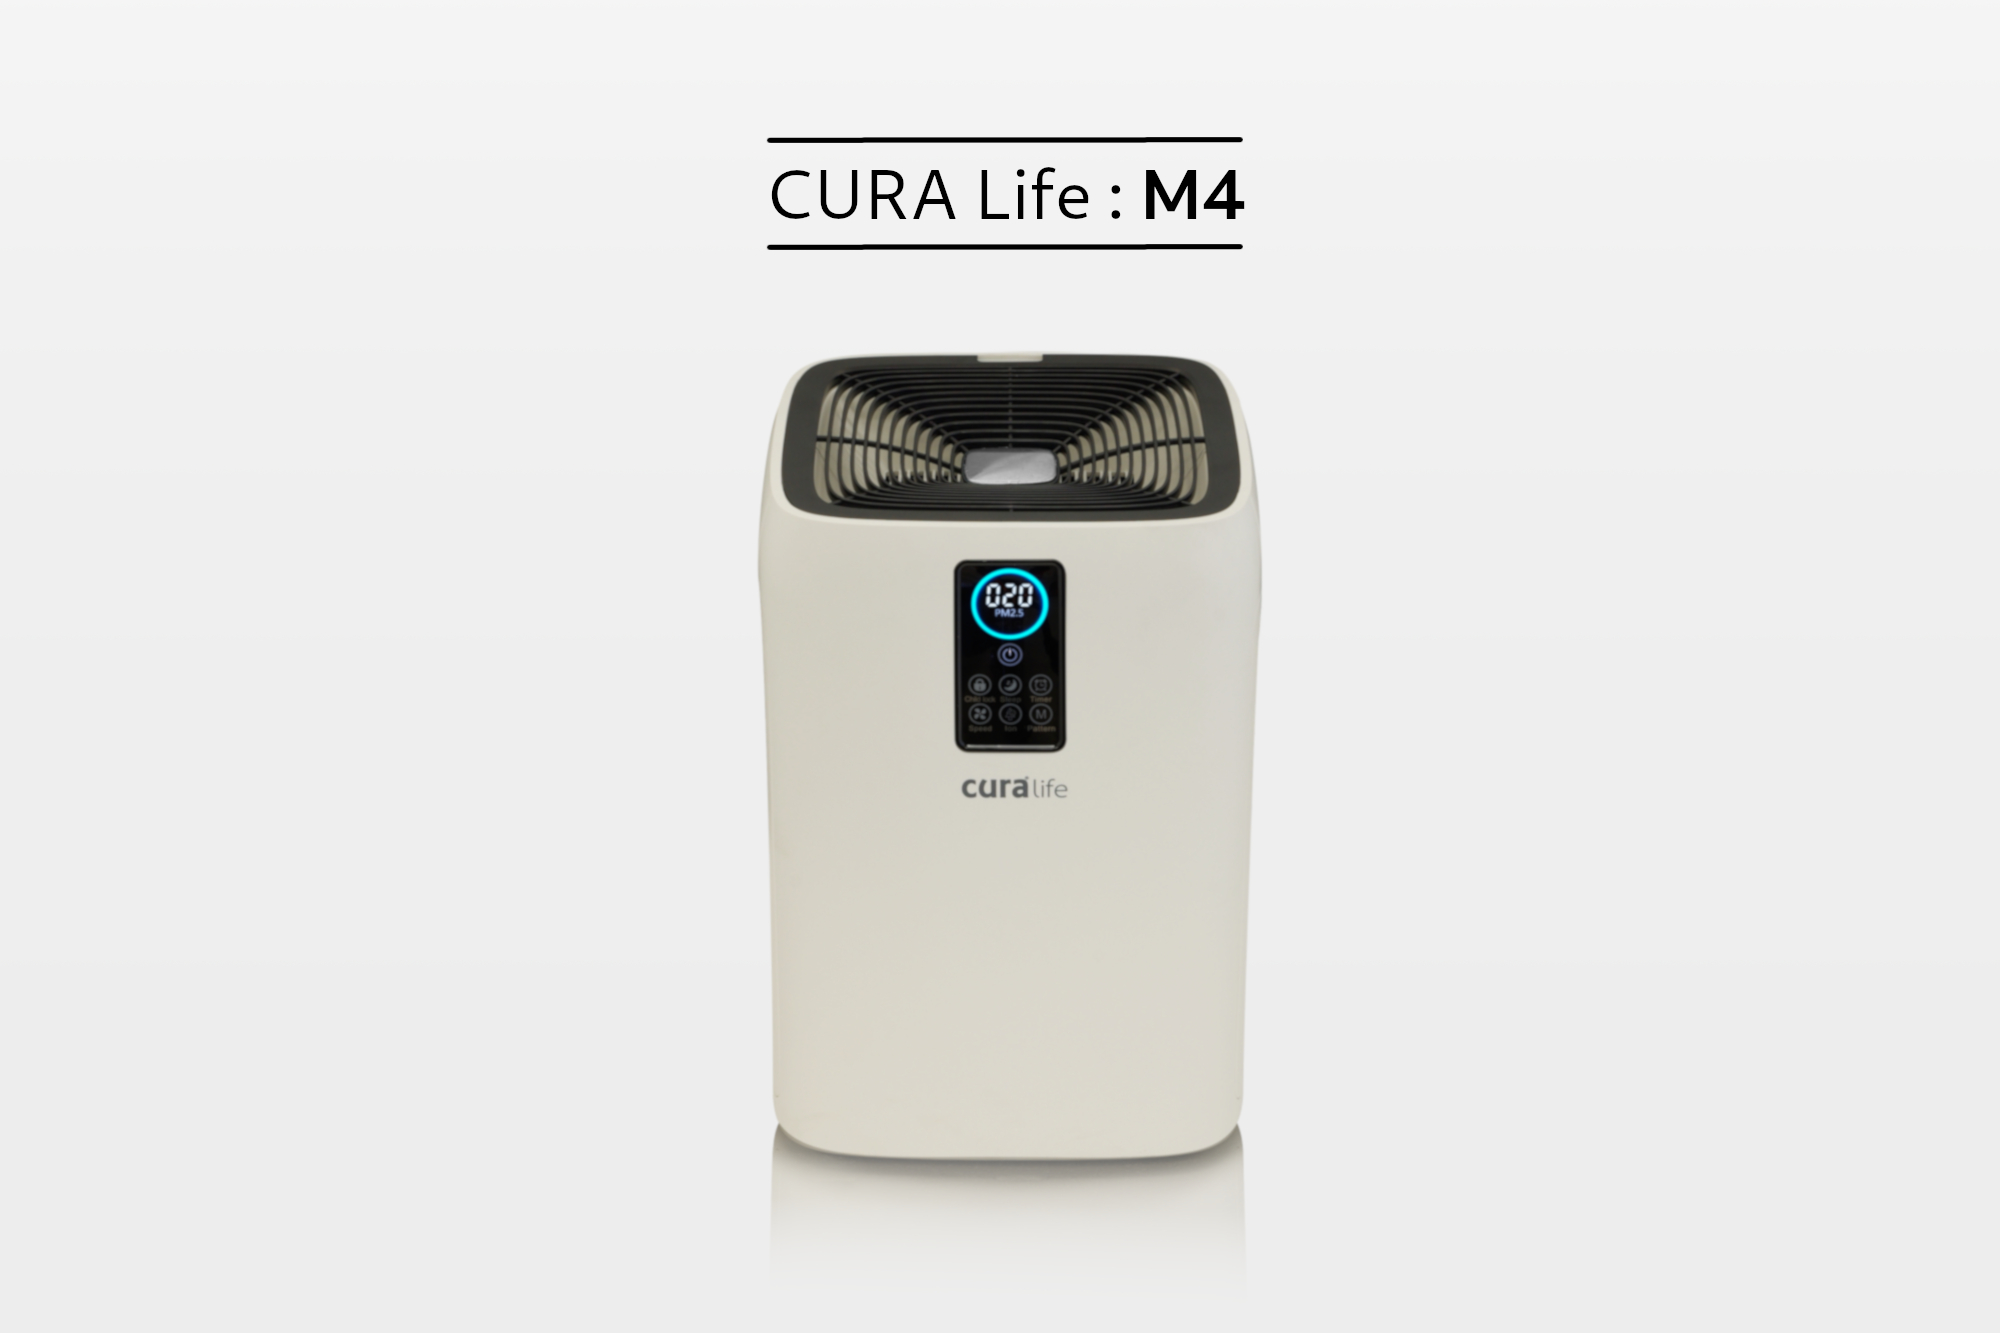 เครื่องฟอกอากาศ กรองดักกำาจัดฝุ่นด้วยระบบ Pre-filter ร่วมด้วยระบบ HEPA filter จึงทำให้สามารถดักจับฝุ่นละอองในอากาศที่มีขนาดเล็กไม่เกิน 25 ไมครอน หรือ PM 2.5 ได้ ดักจับกลิ่นด้วย Activated Carbon ยี่ห้อ CURA Life รุ่น M4